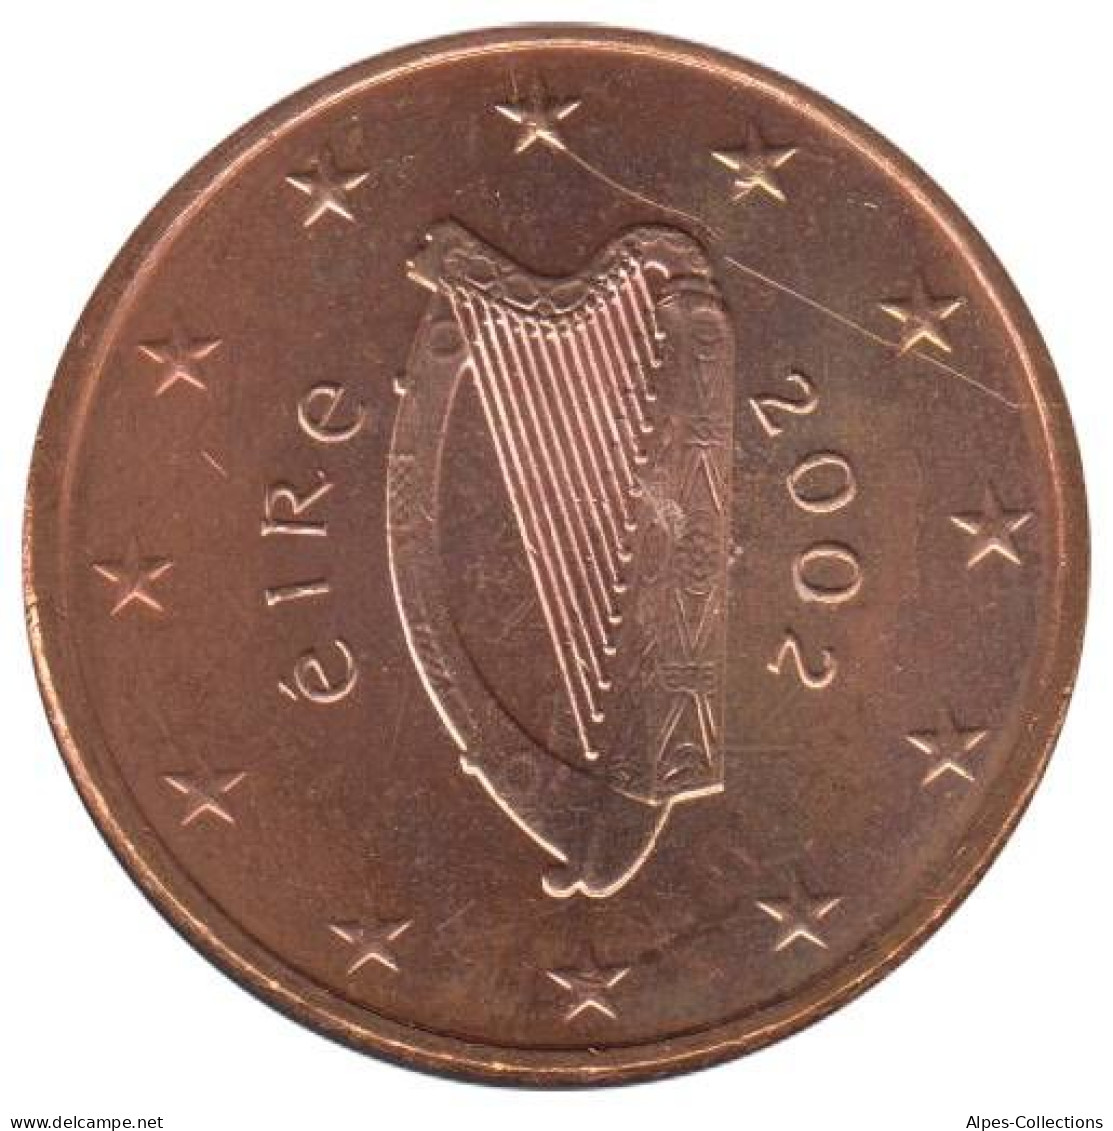 IR00502.1 - IRLANDE - 5 Cents - 2002 - Ireland